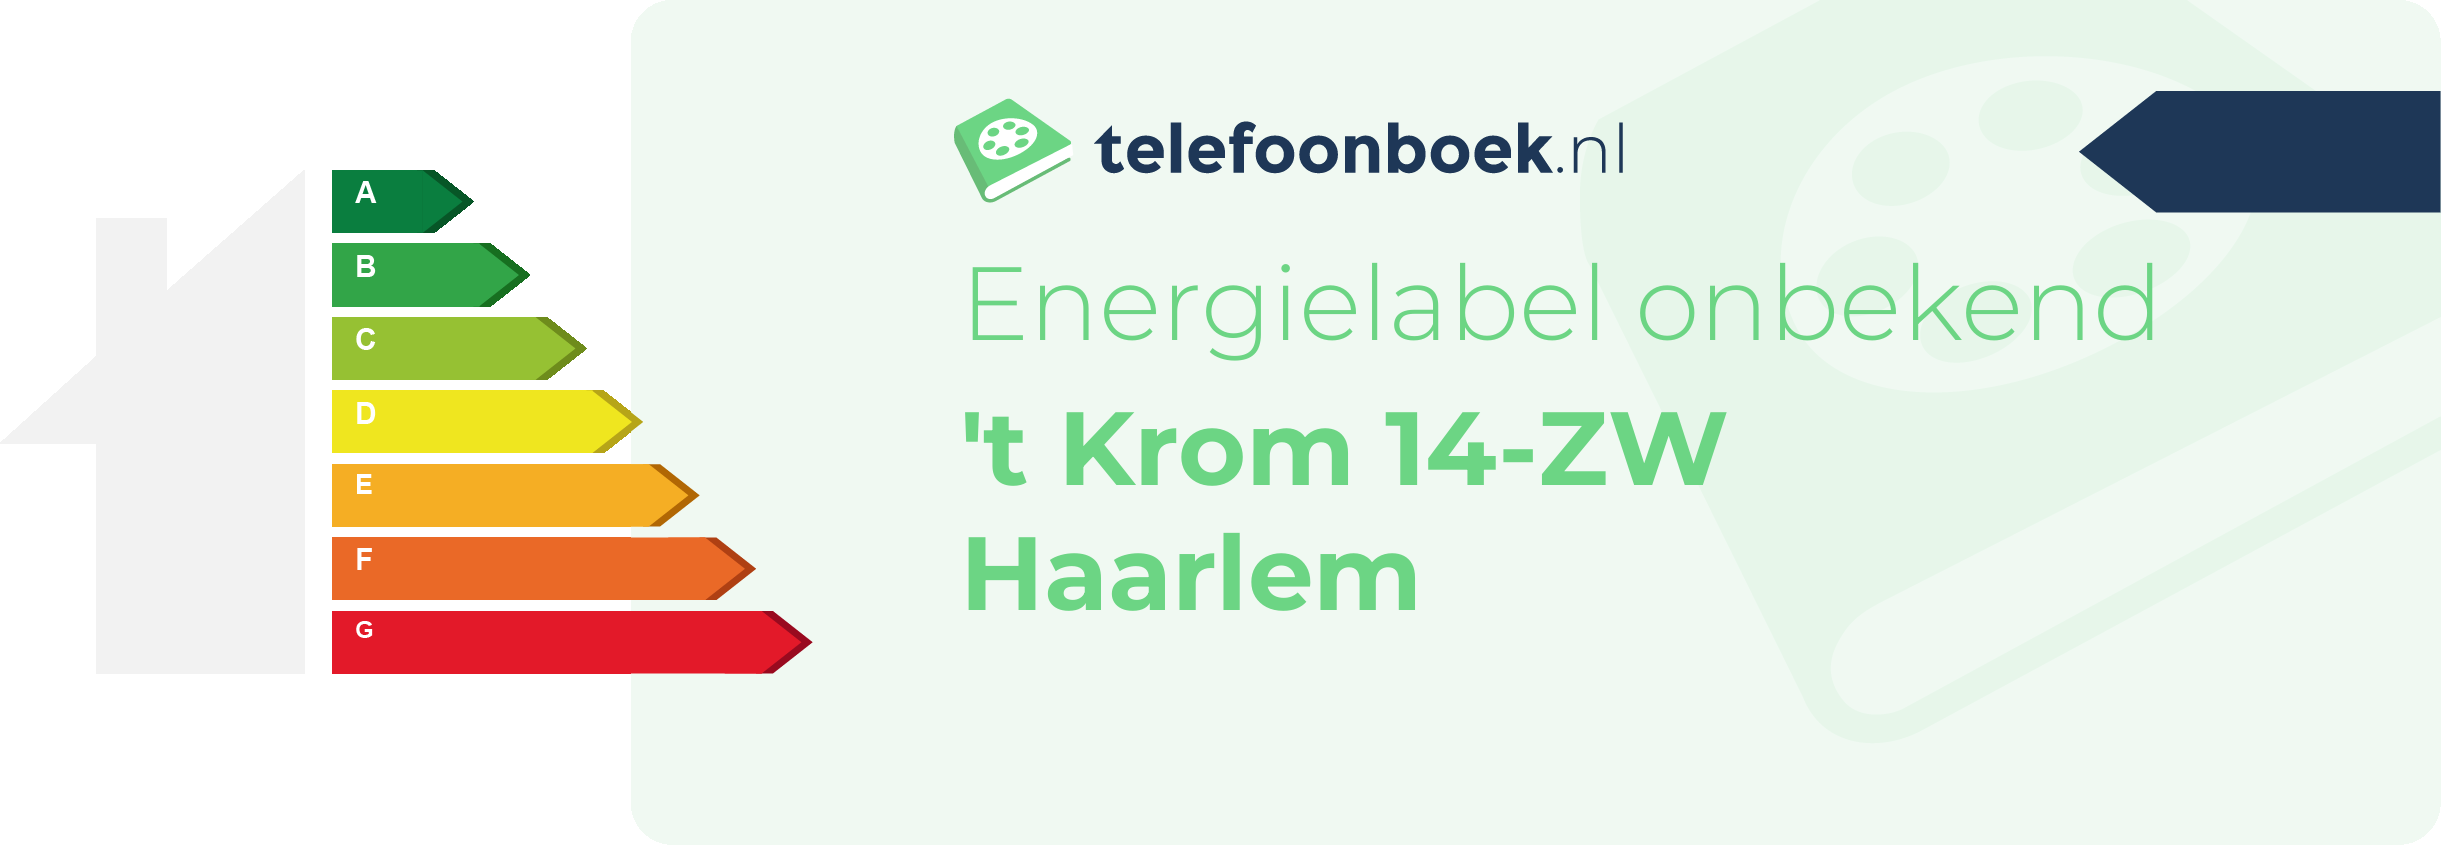 Energielabel 't Krom 14-ZW Haarlem